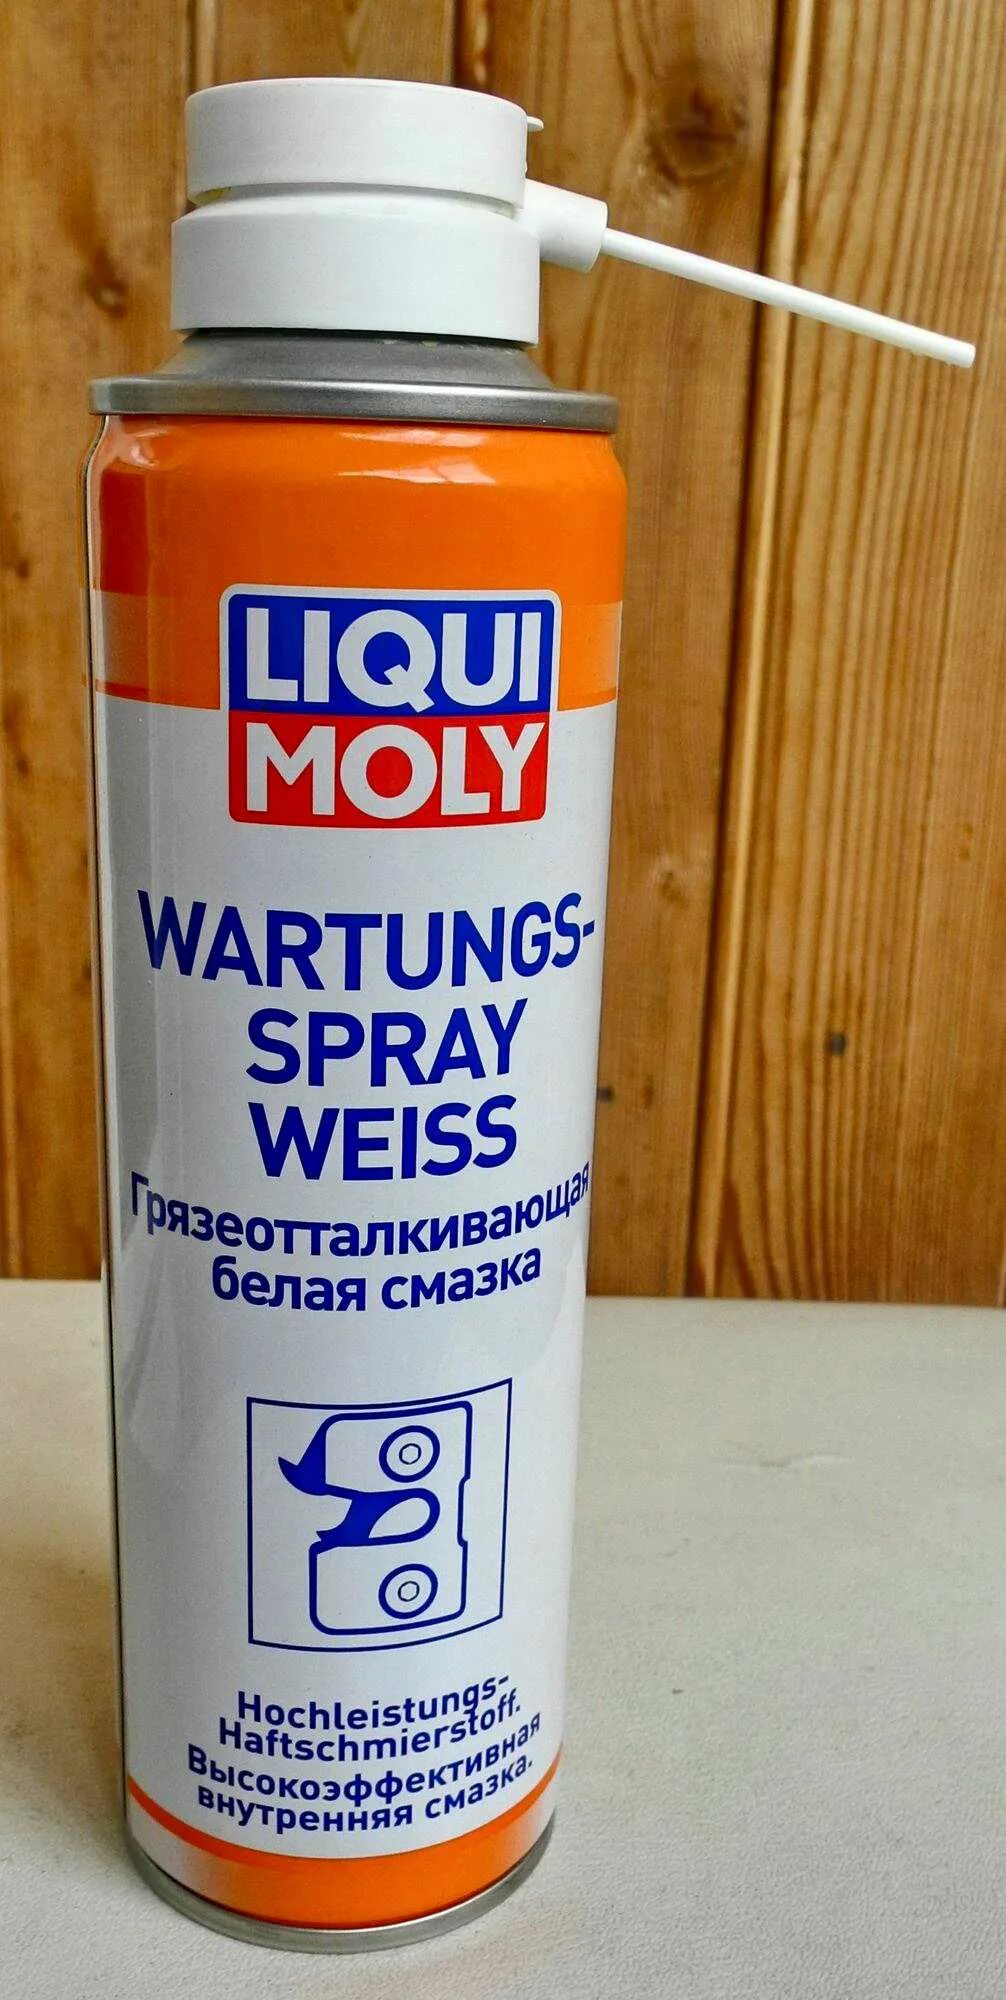 Белая смазка для автомобиля. Смазка Liqui Moly 7556. Смазка Liqui Moly Wartungs Spray Weiss. Liqui Moly Wartungs-Spray Weiss 3953. Белая смазка Liqui Moly.